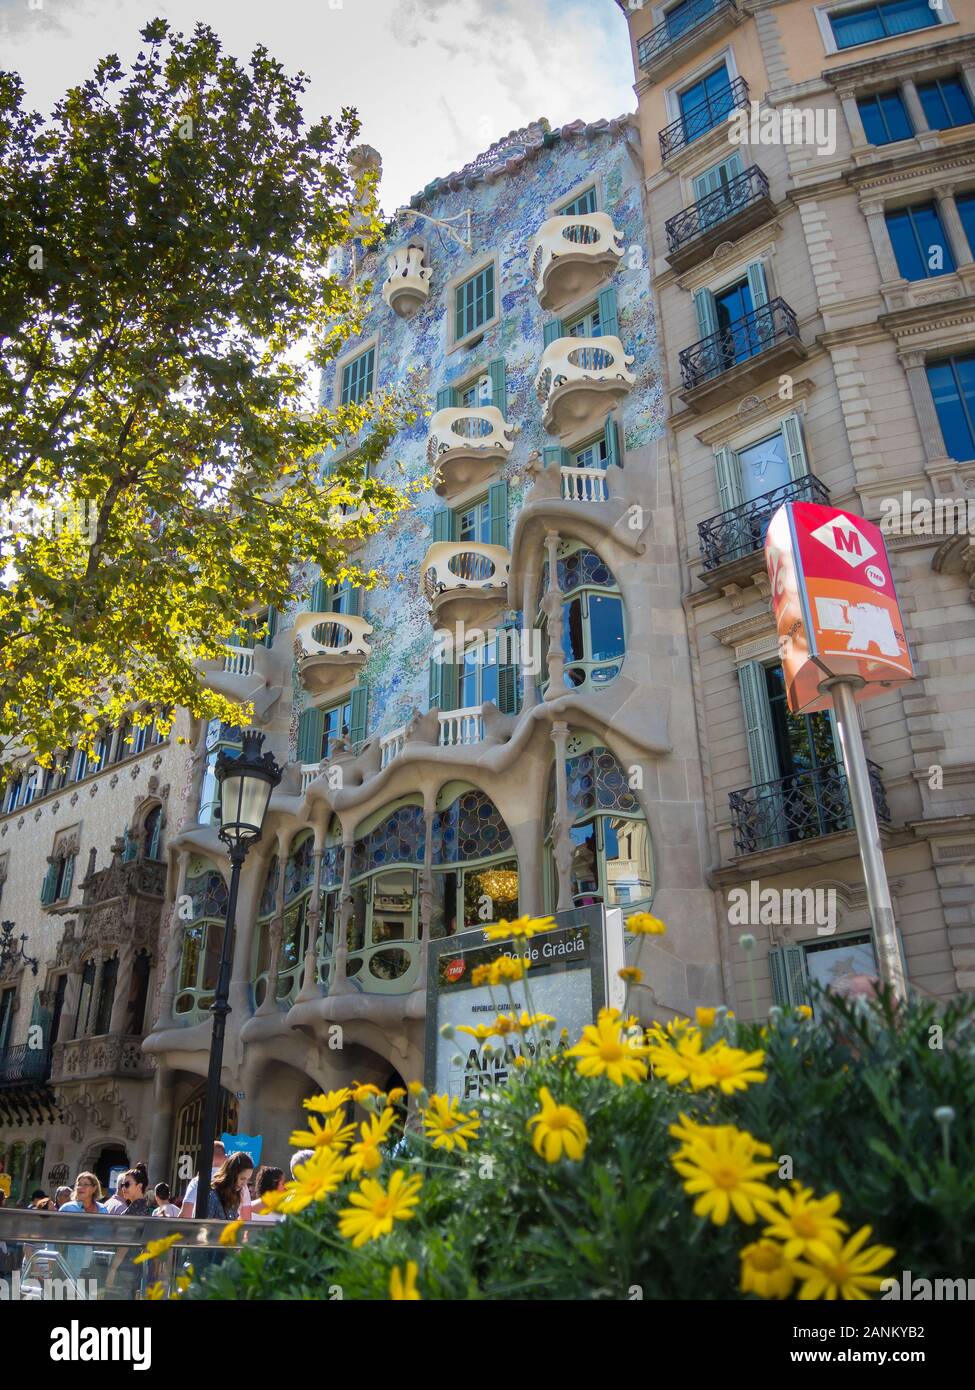 Casa Batllo, Barcelona and Metro sign Stock Photo